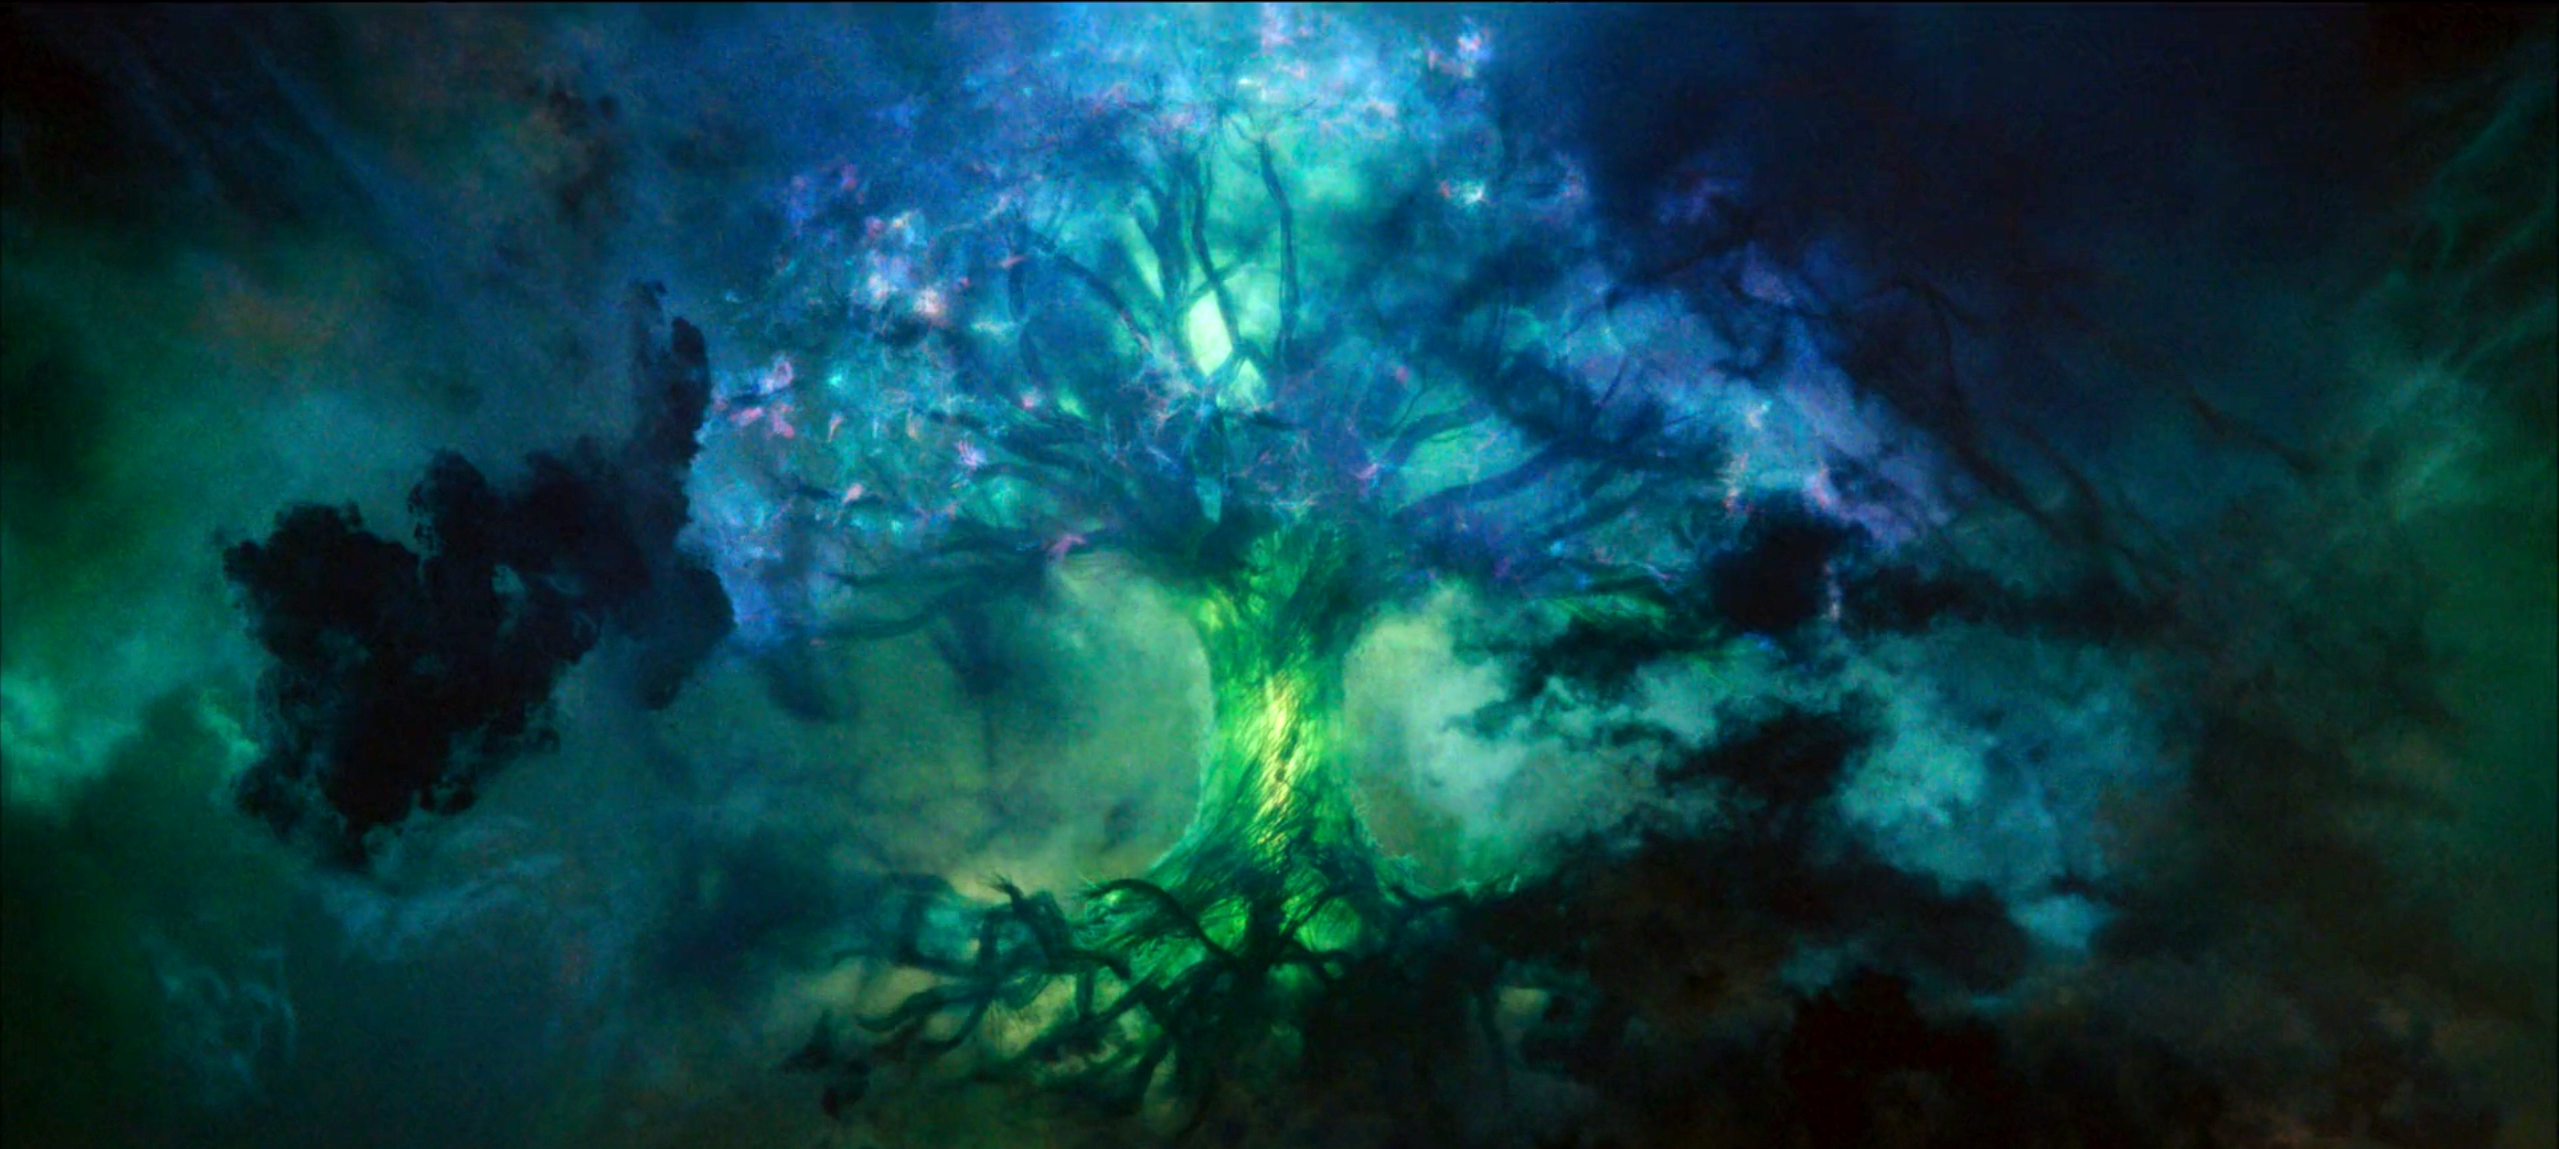 Yggdrasil Loki MCU Comics Nine Realms Worlds Tree Digital Art Trees 2559x1149